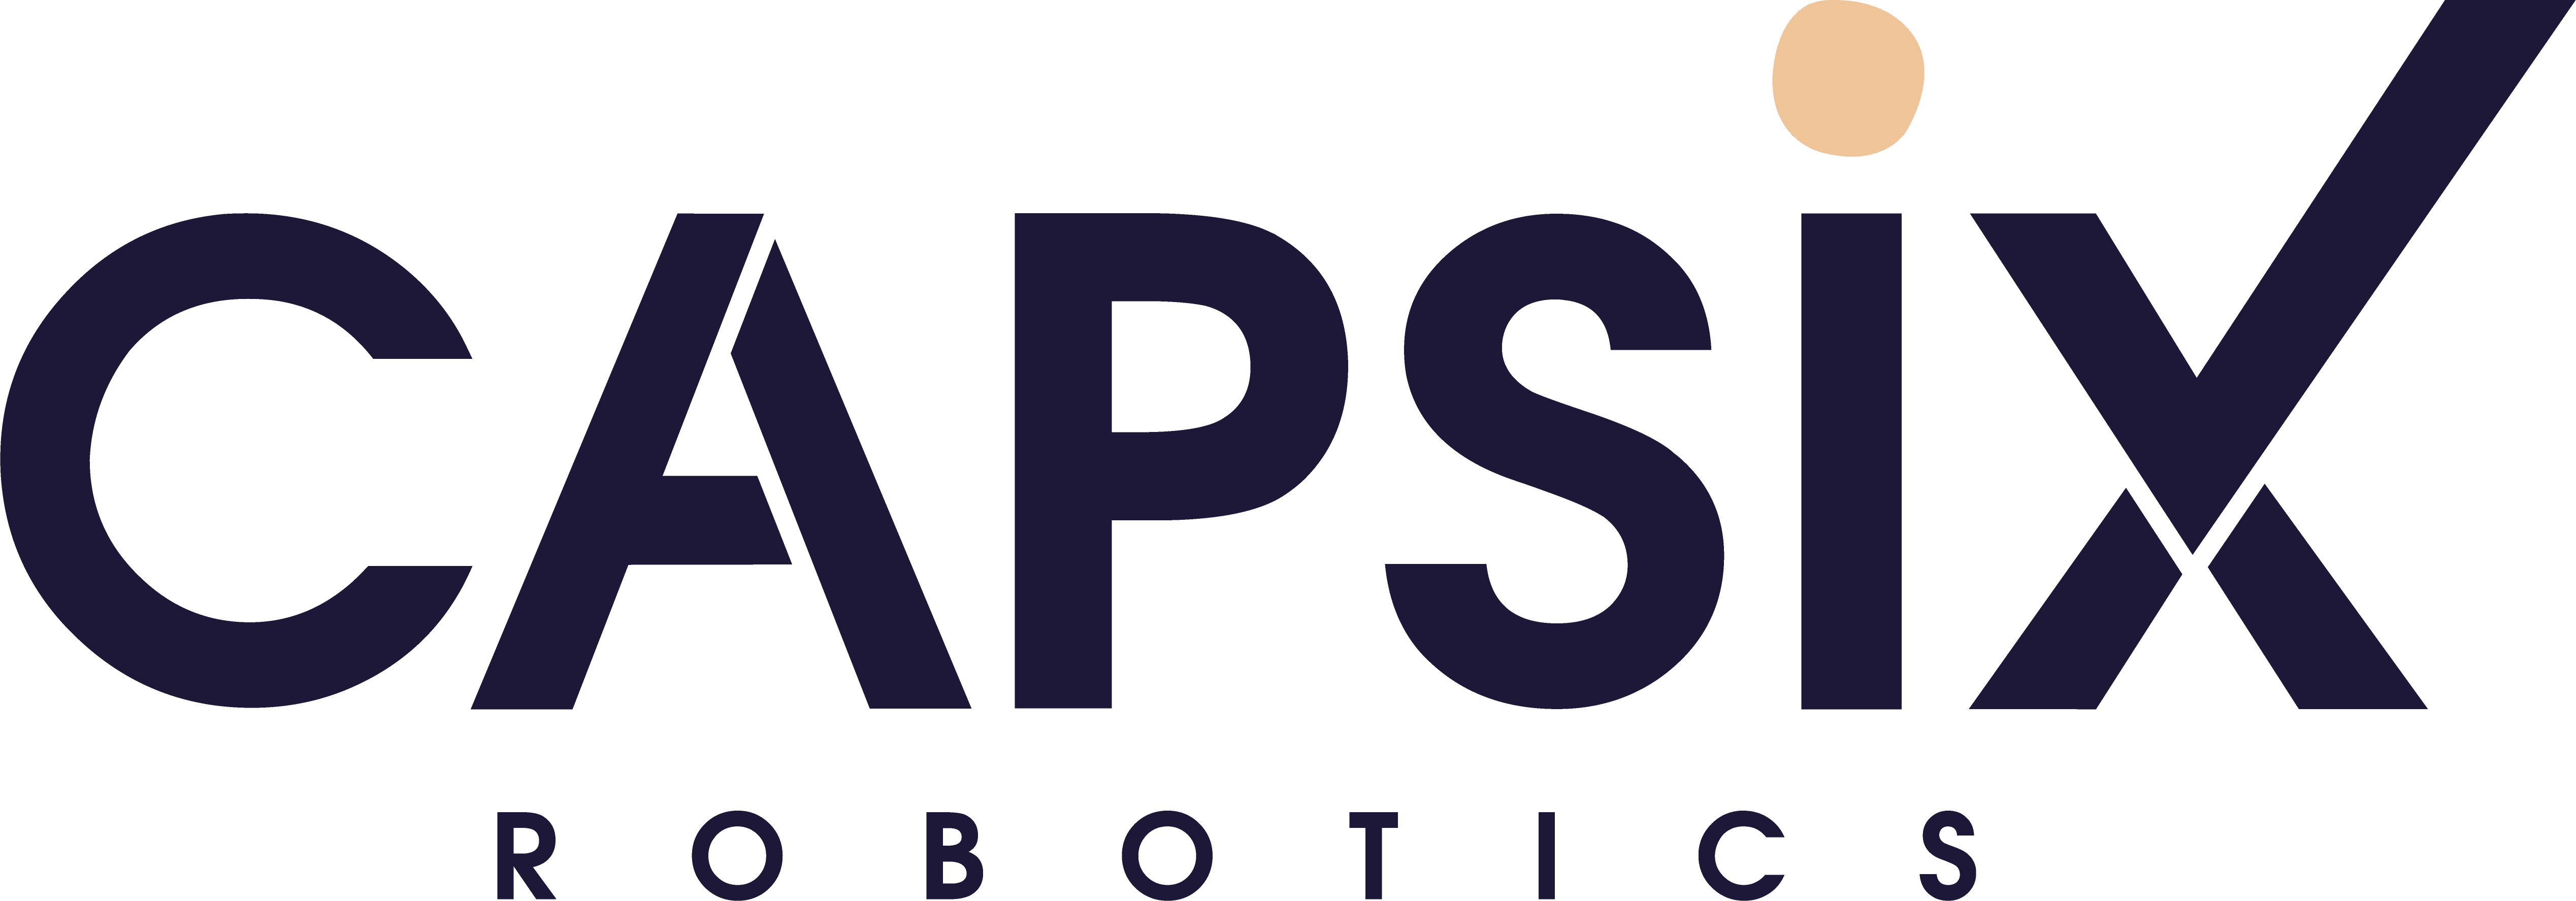 Logo Capsix Robotics data